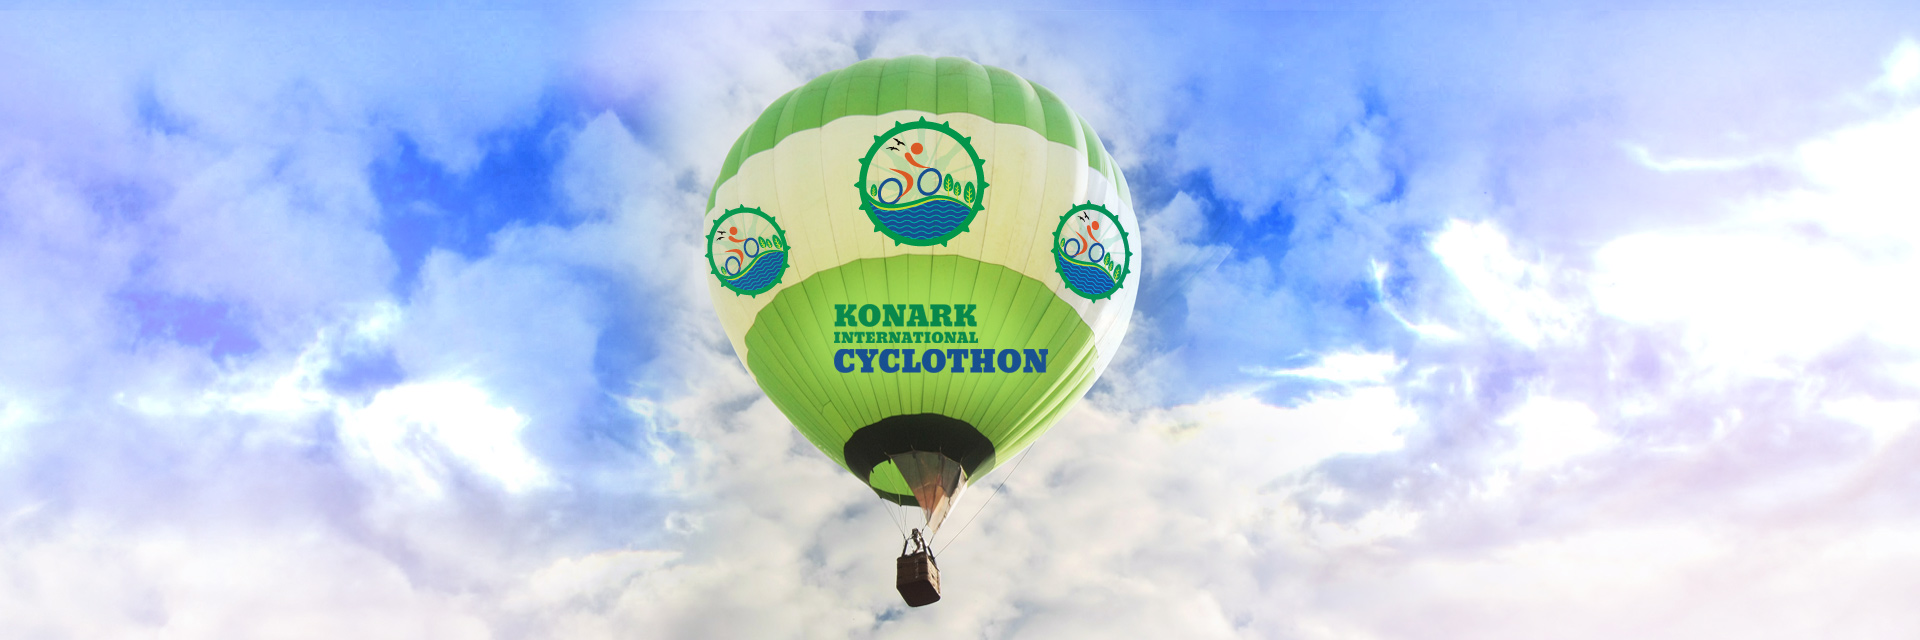 Tour-De-Konark, November 29, 2015